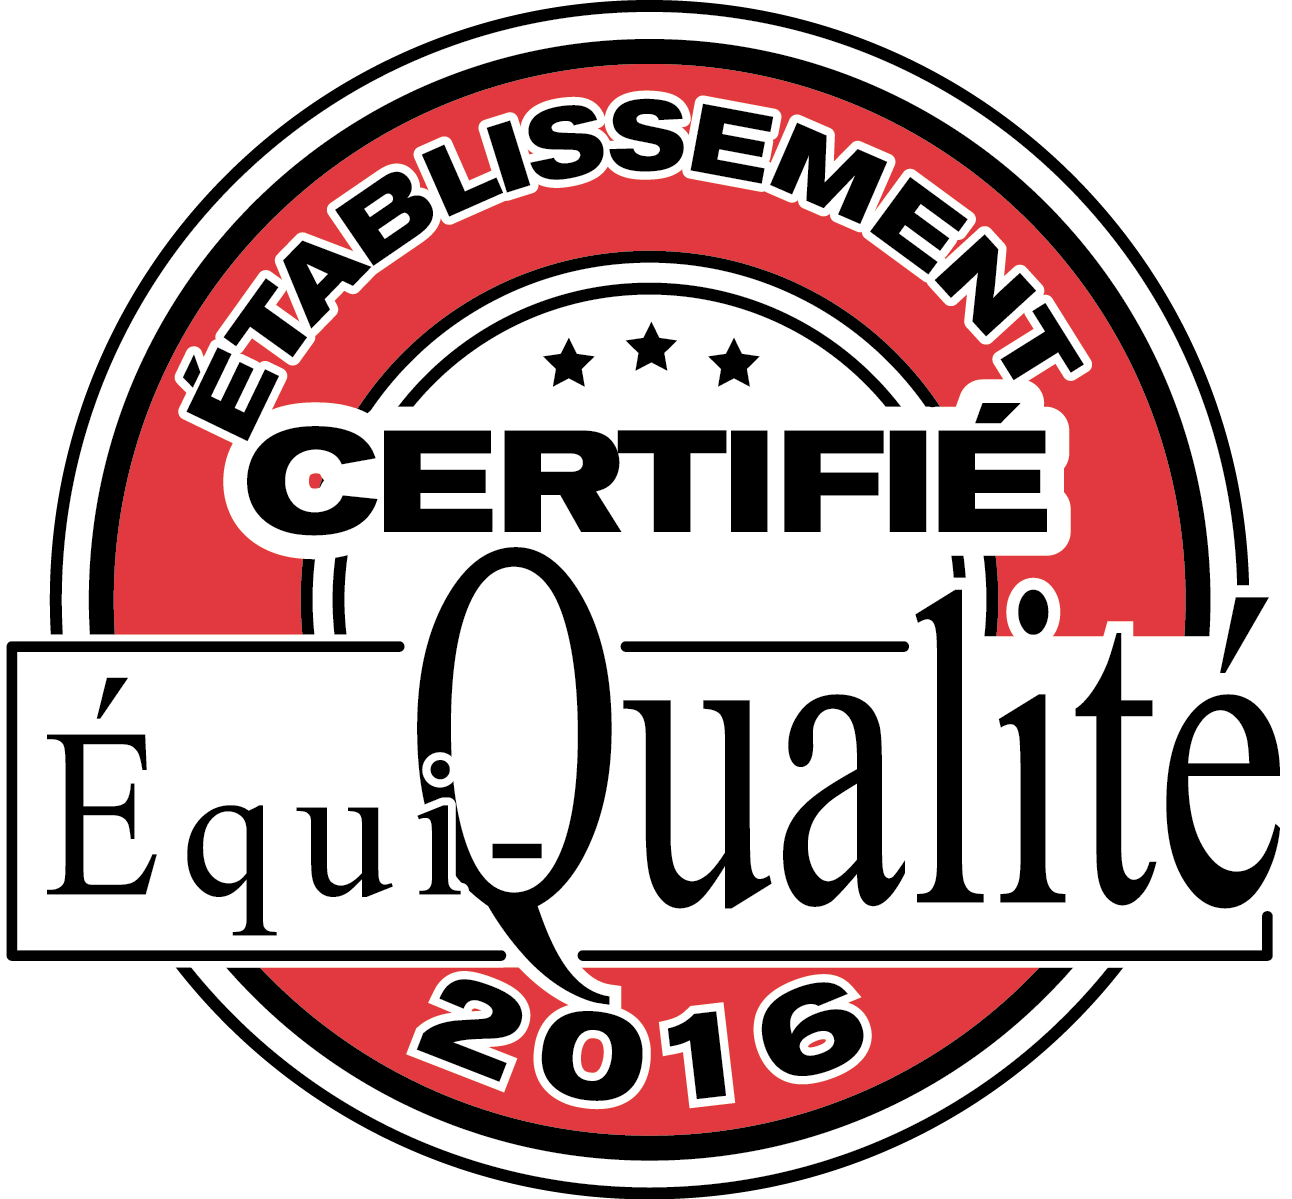 Établissement certifié Équi-Qualité 2016